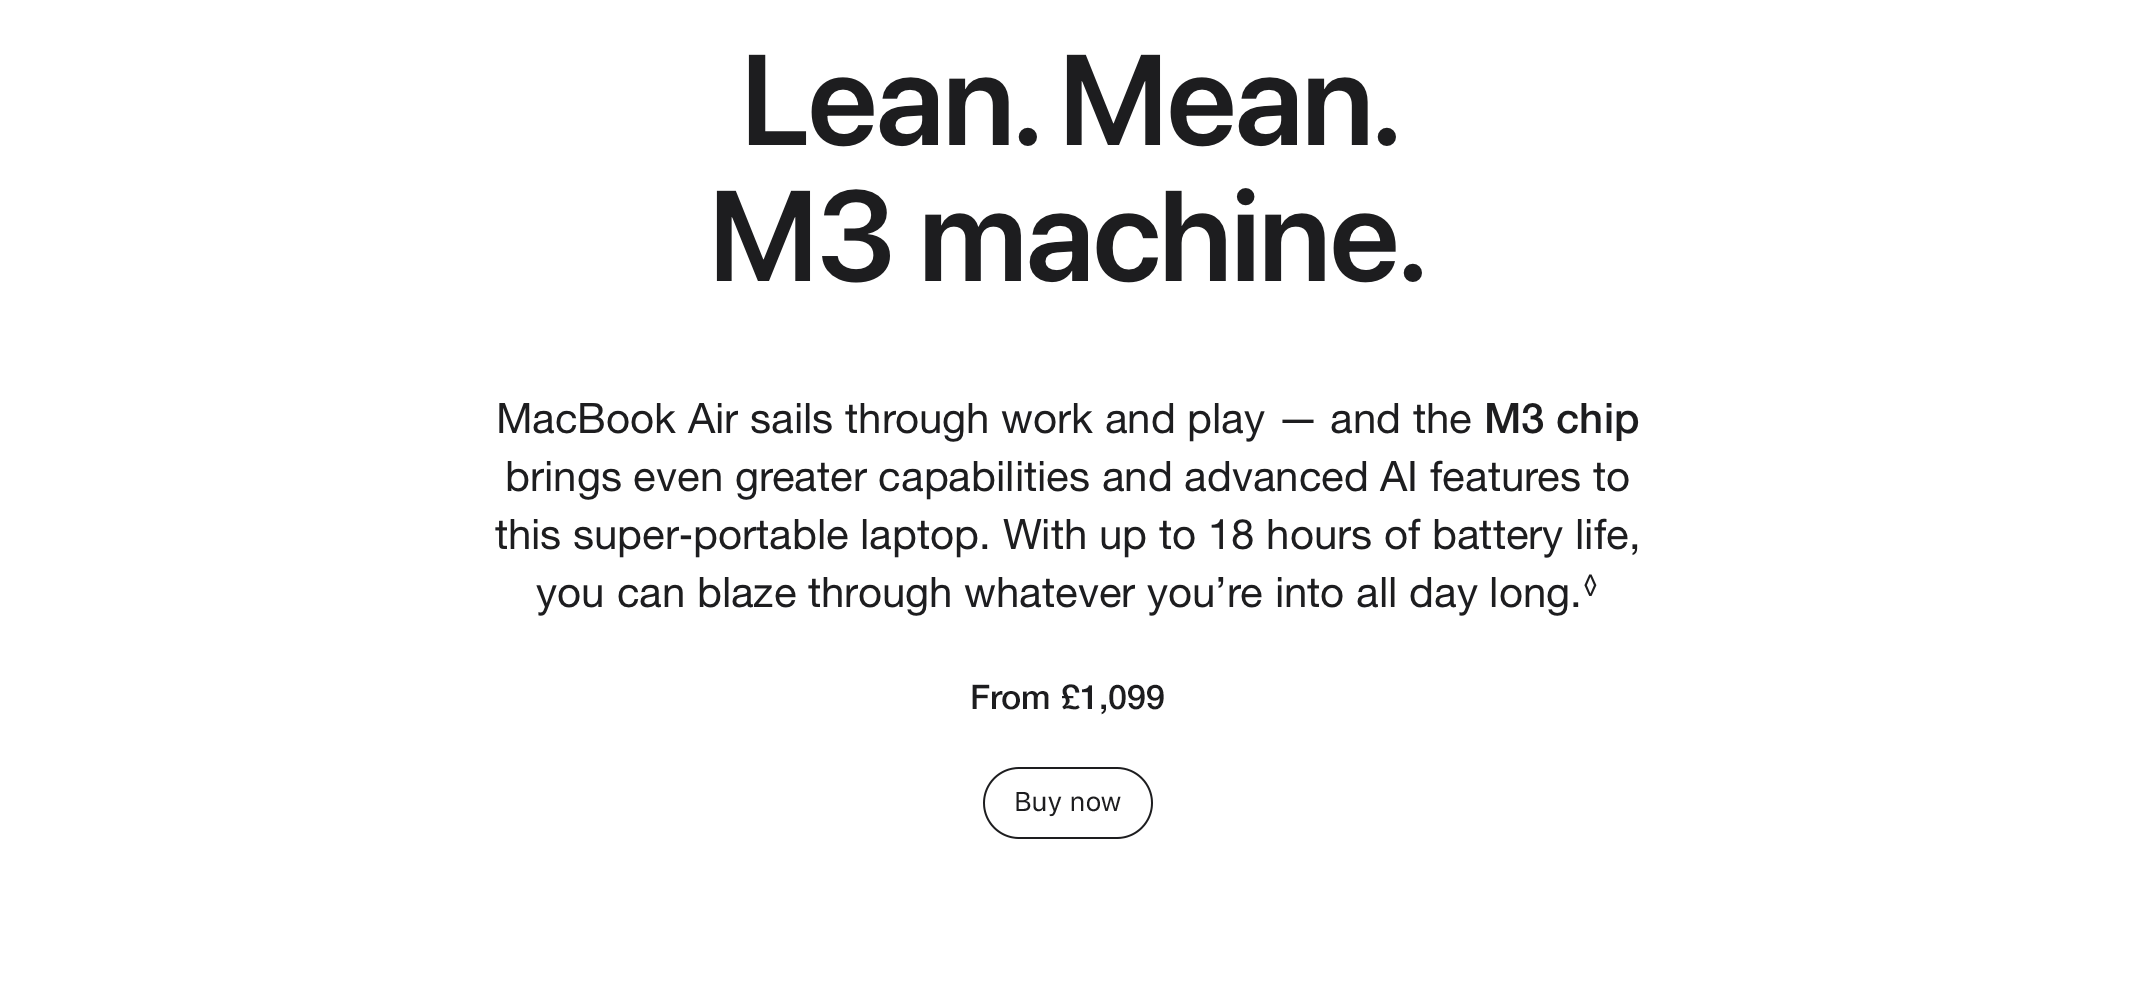 Lean. Mean. M3 Machine.